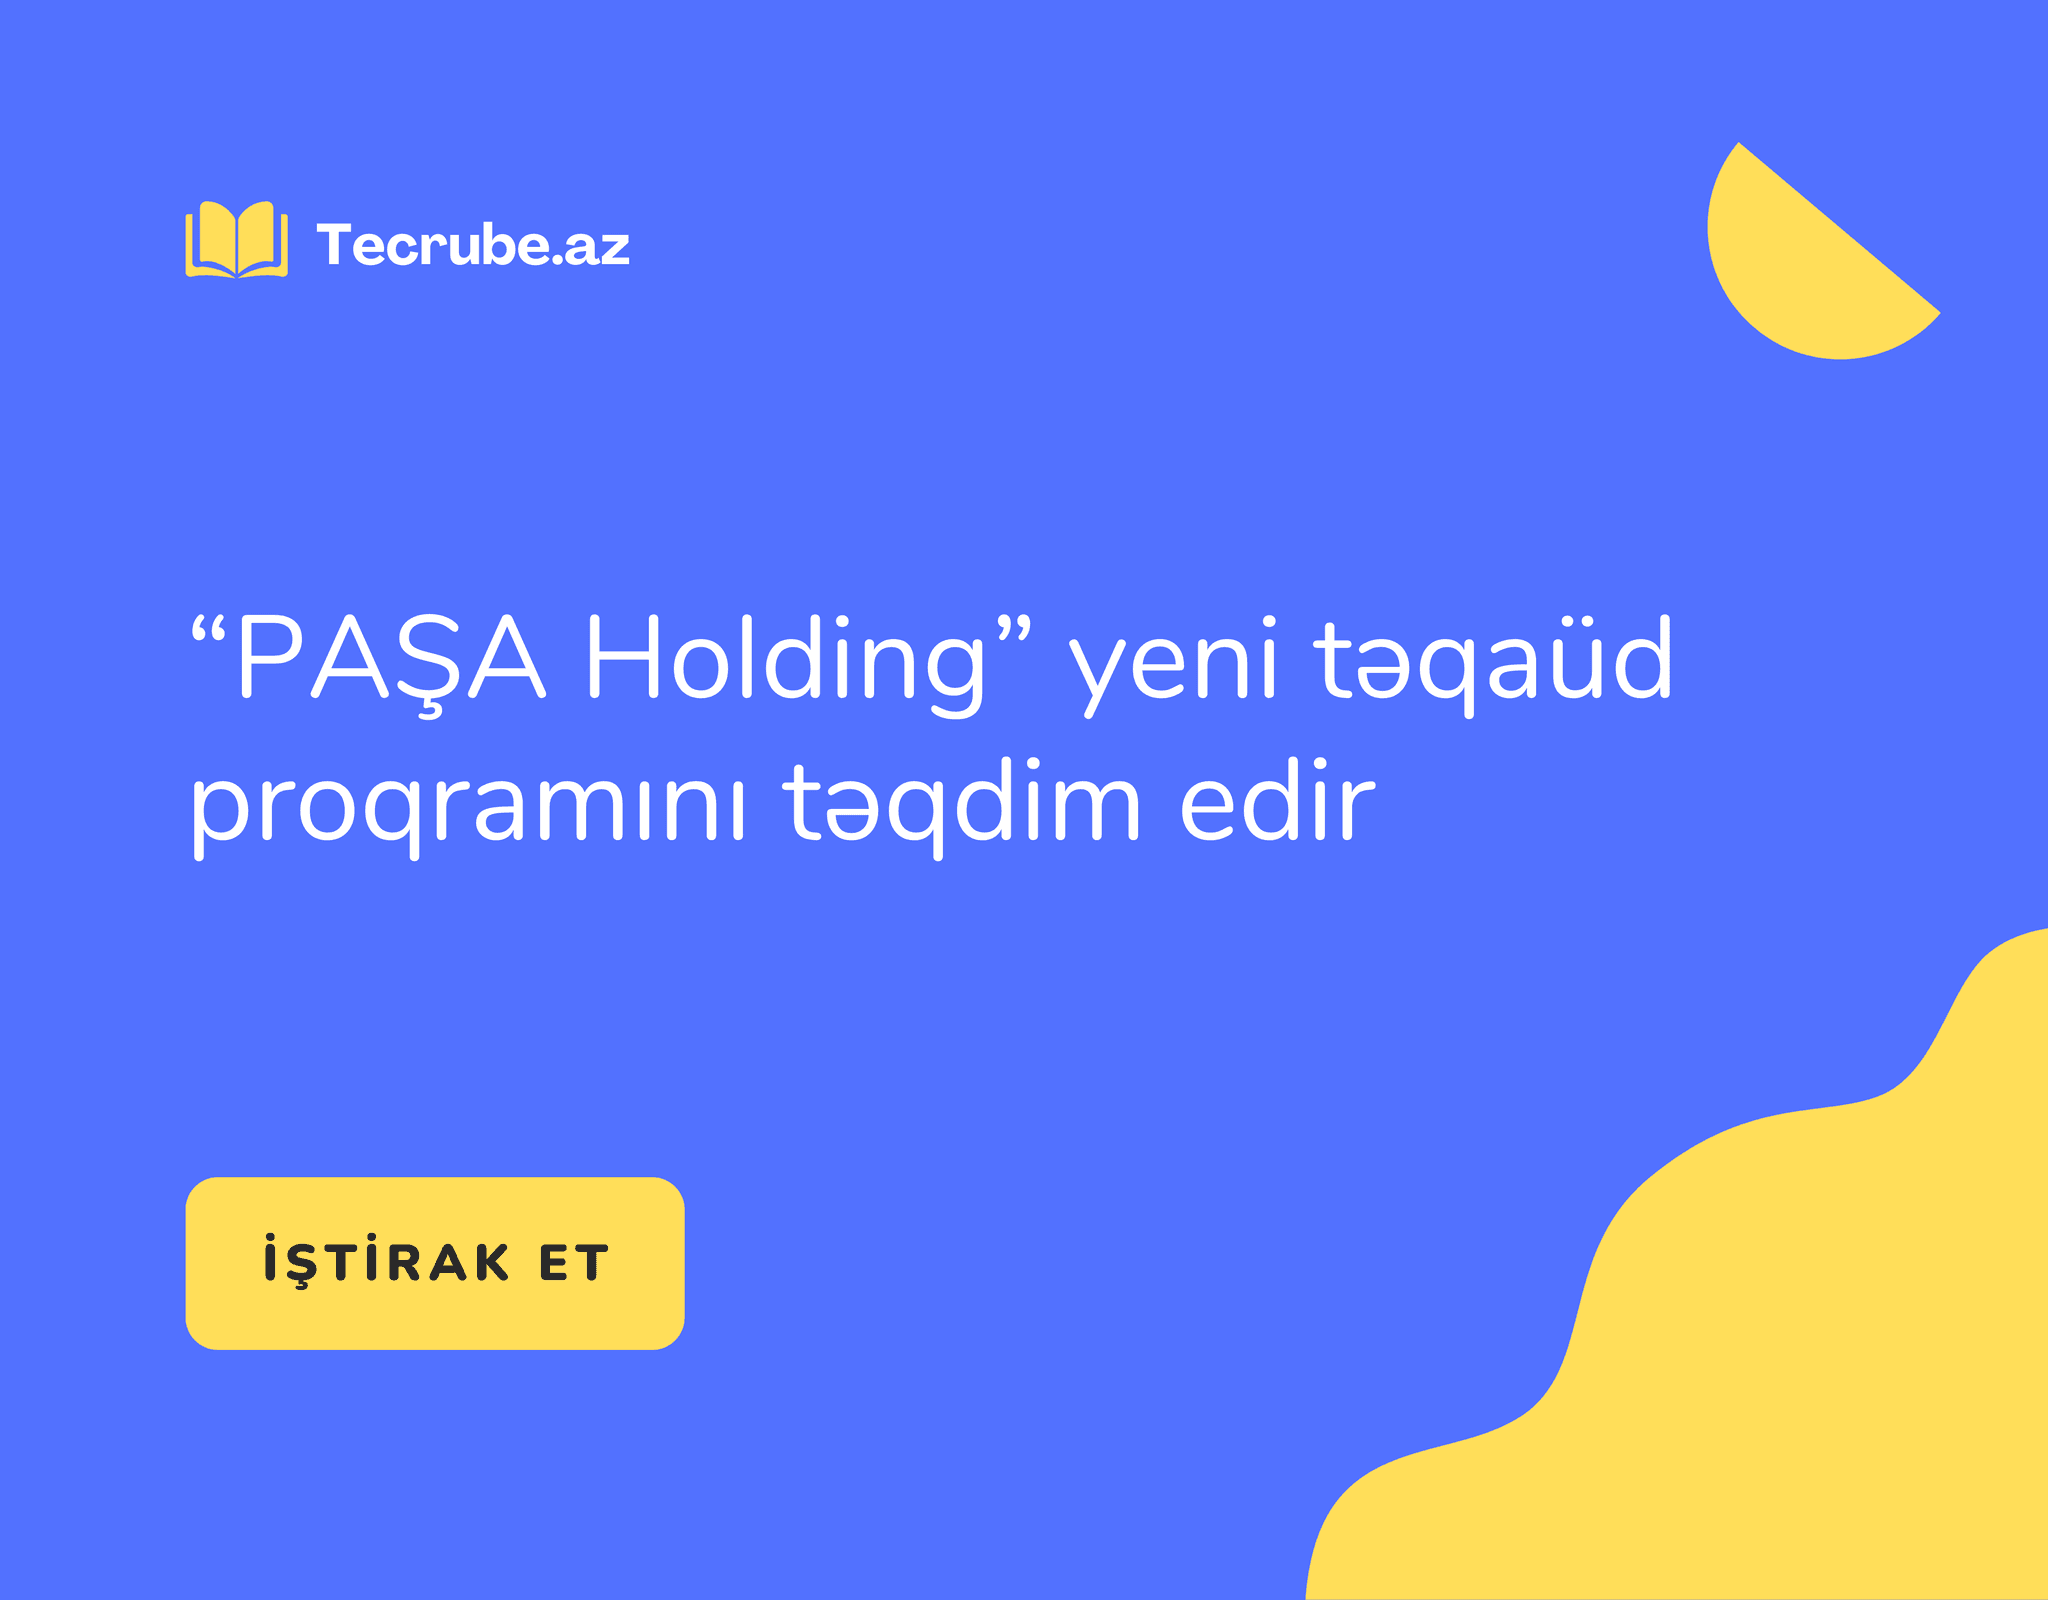 “PAŞA Holding” yeni təqaüd proqramını təqdim edir